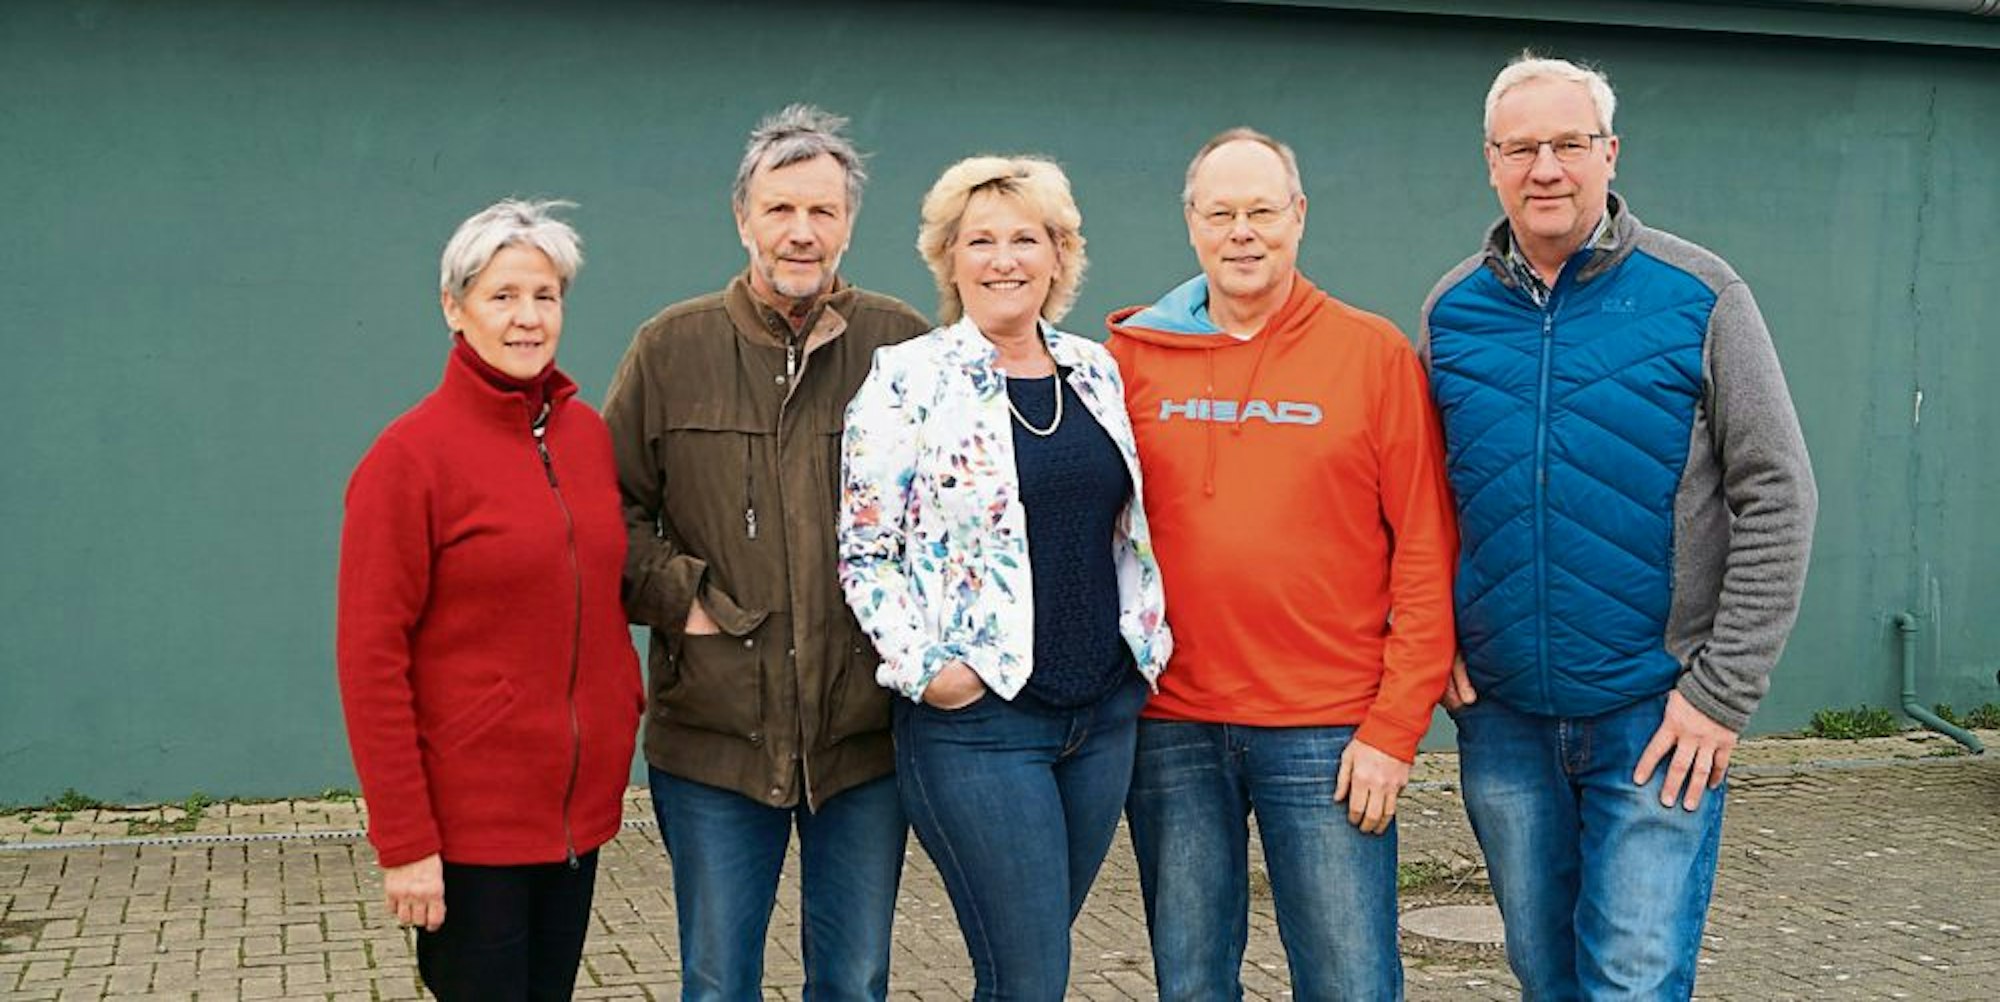 Für die Interessengemeinschaft „Glessen autark“: Anne Keller, Rolf Brunkhorst, Jutta Nett, Detlef Werner und Peter Pütz.